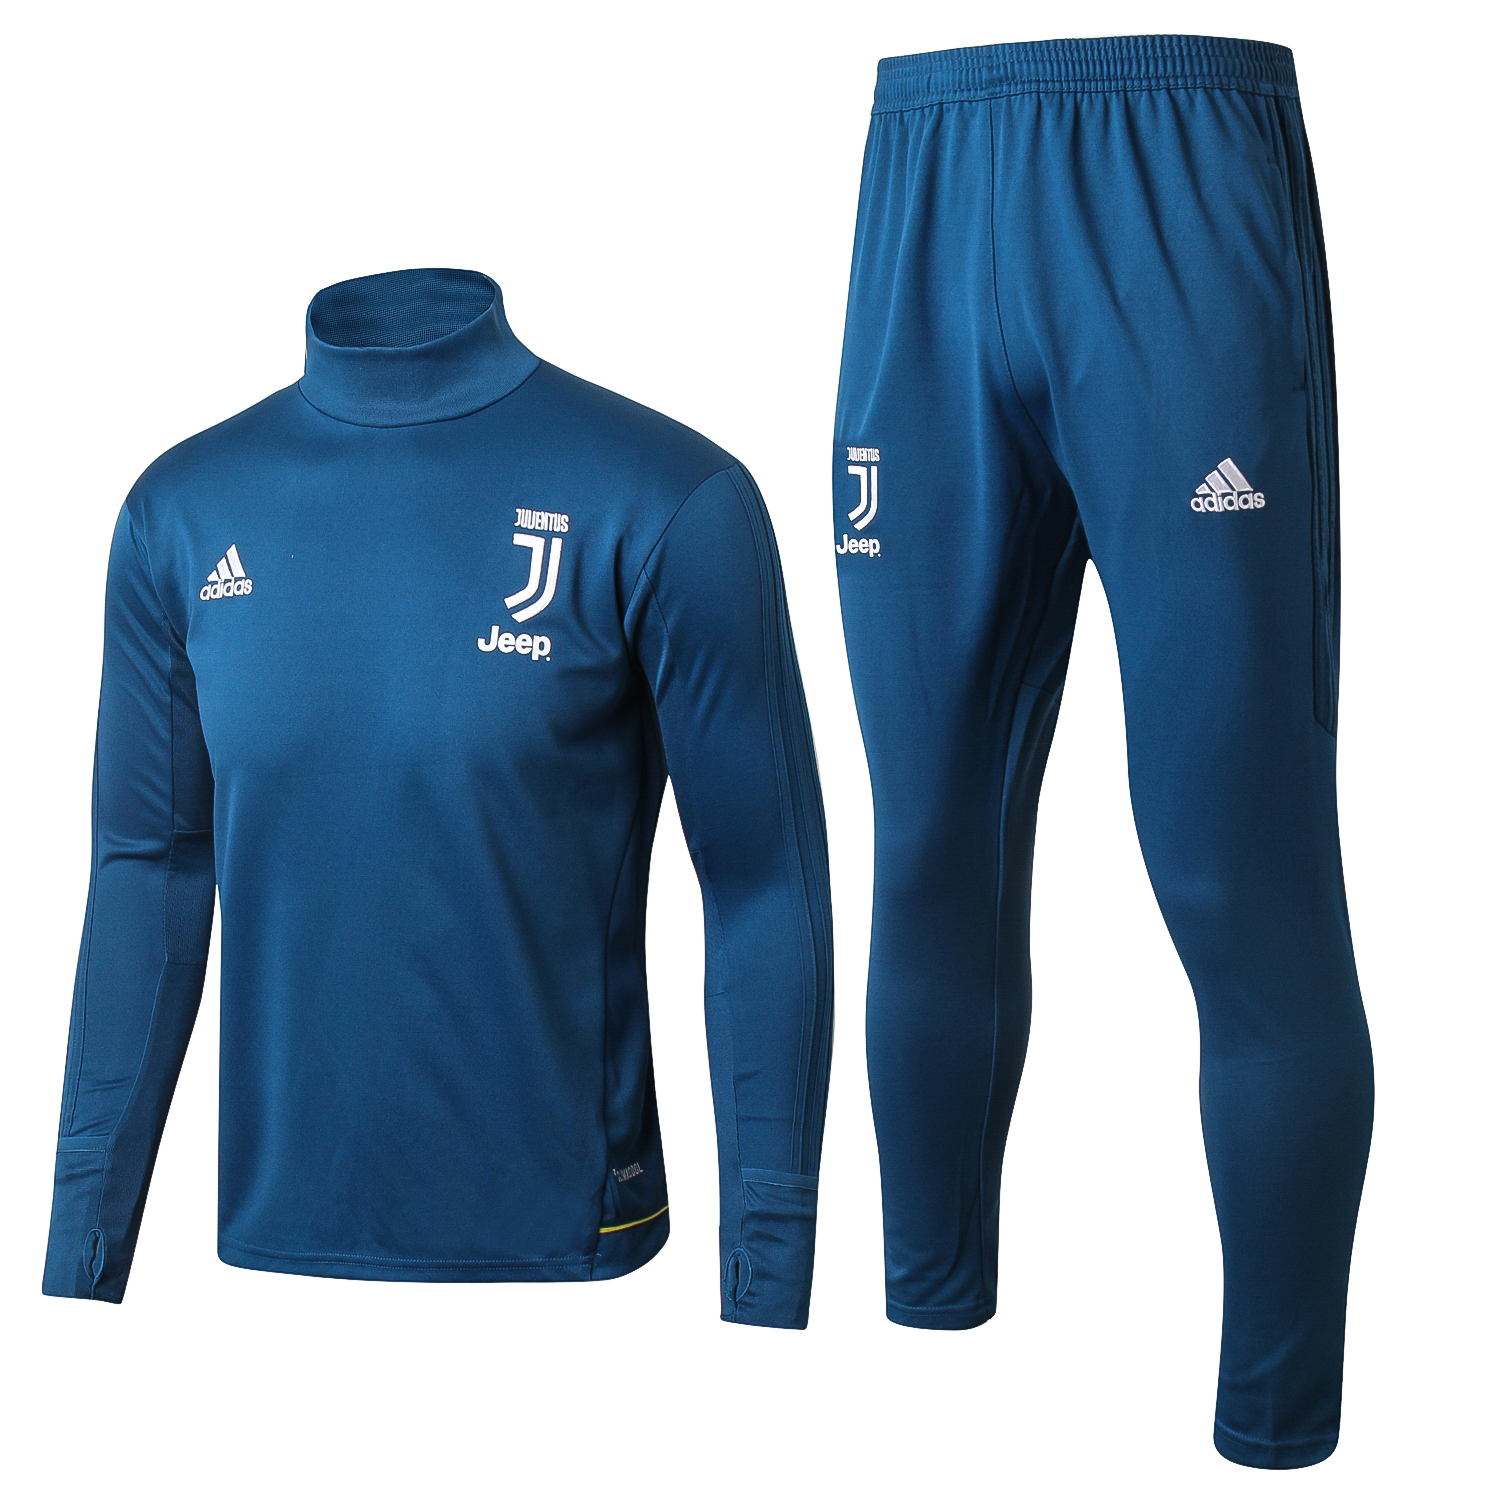 Chandal Juventus 2017-18 Azul Marino